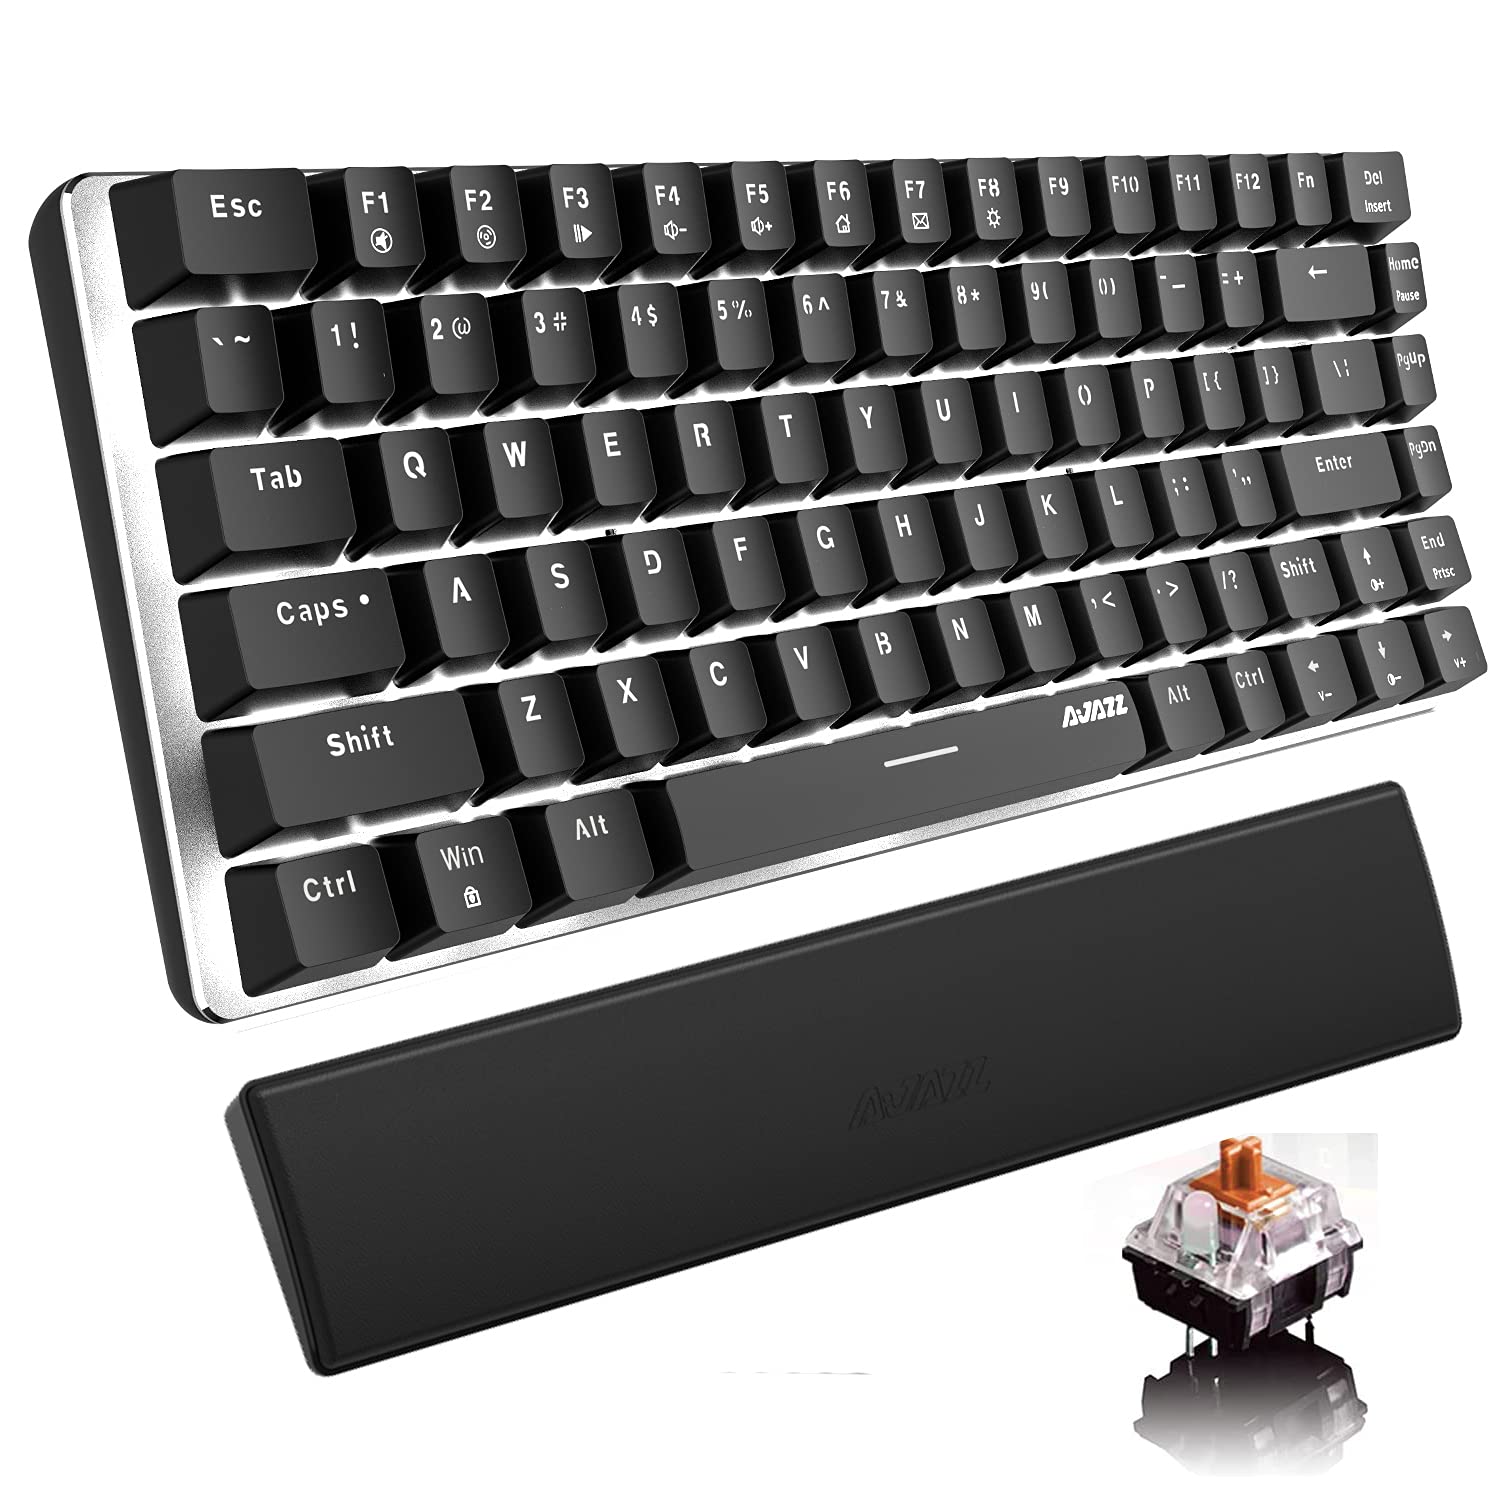 Mechanische Tastatur-Handgelenkstütze AK33 White LED Backlit USB-Kabel-Gaming Mechanische Tastatur, 82-Taste Kompakte Tastatur PU-Leder Memory Foam-Handgelenkrest für Gamer(brauner Schalter, schwarz)